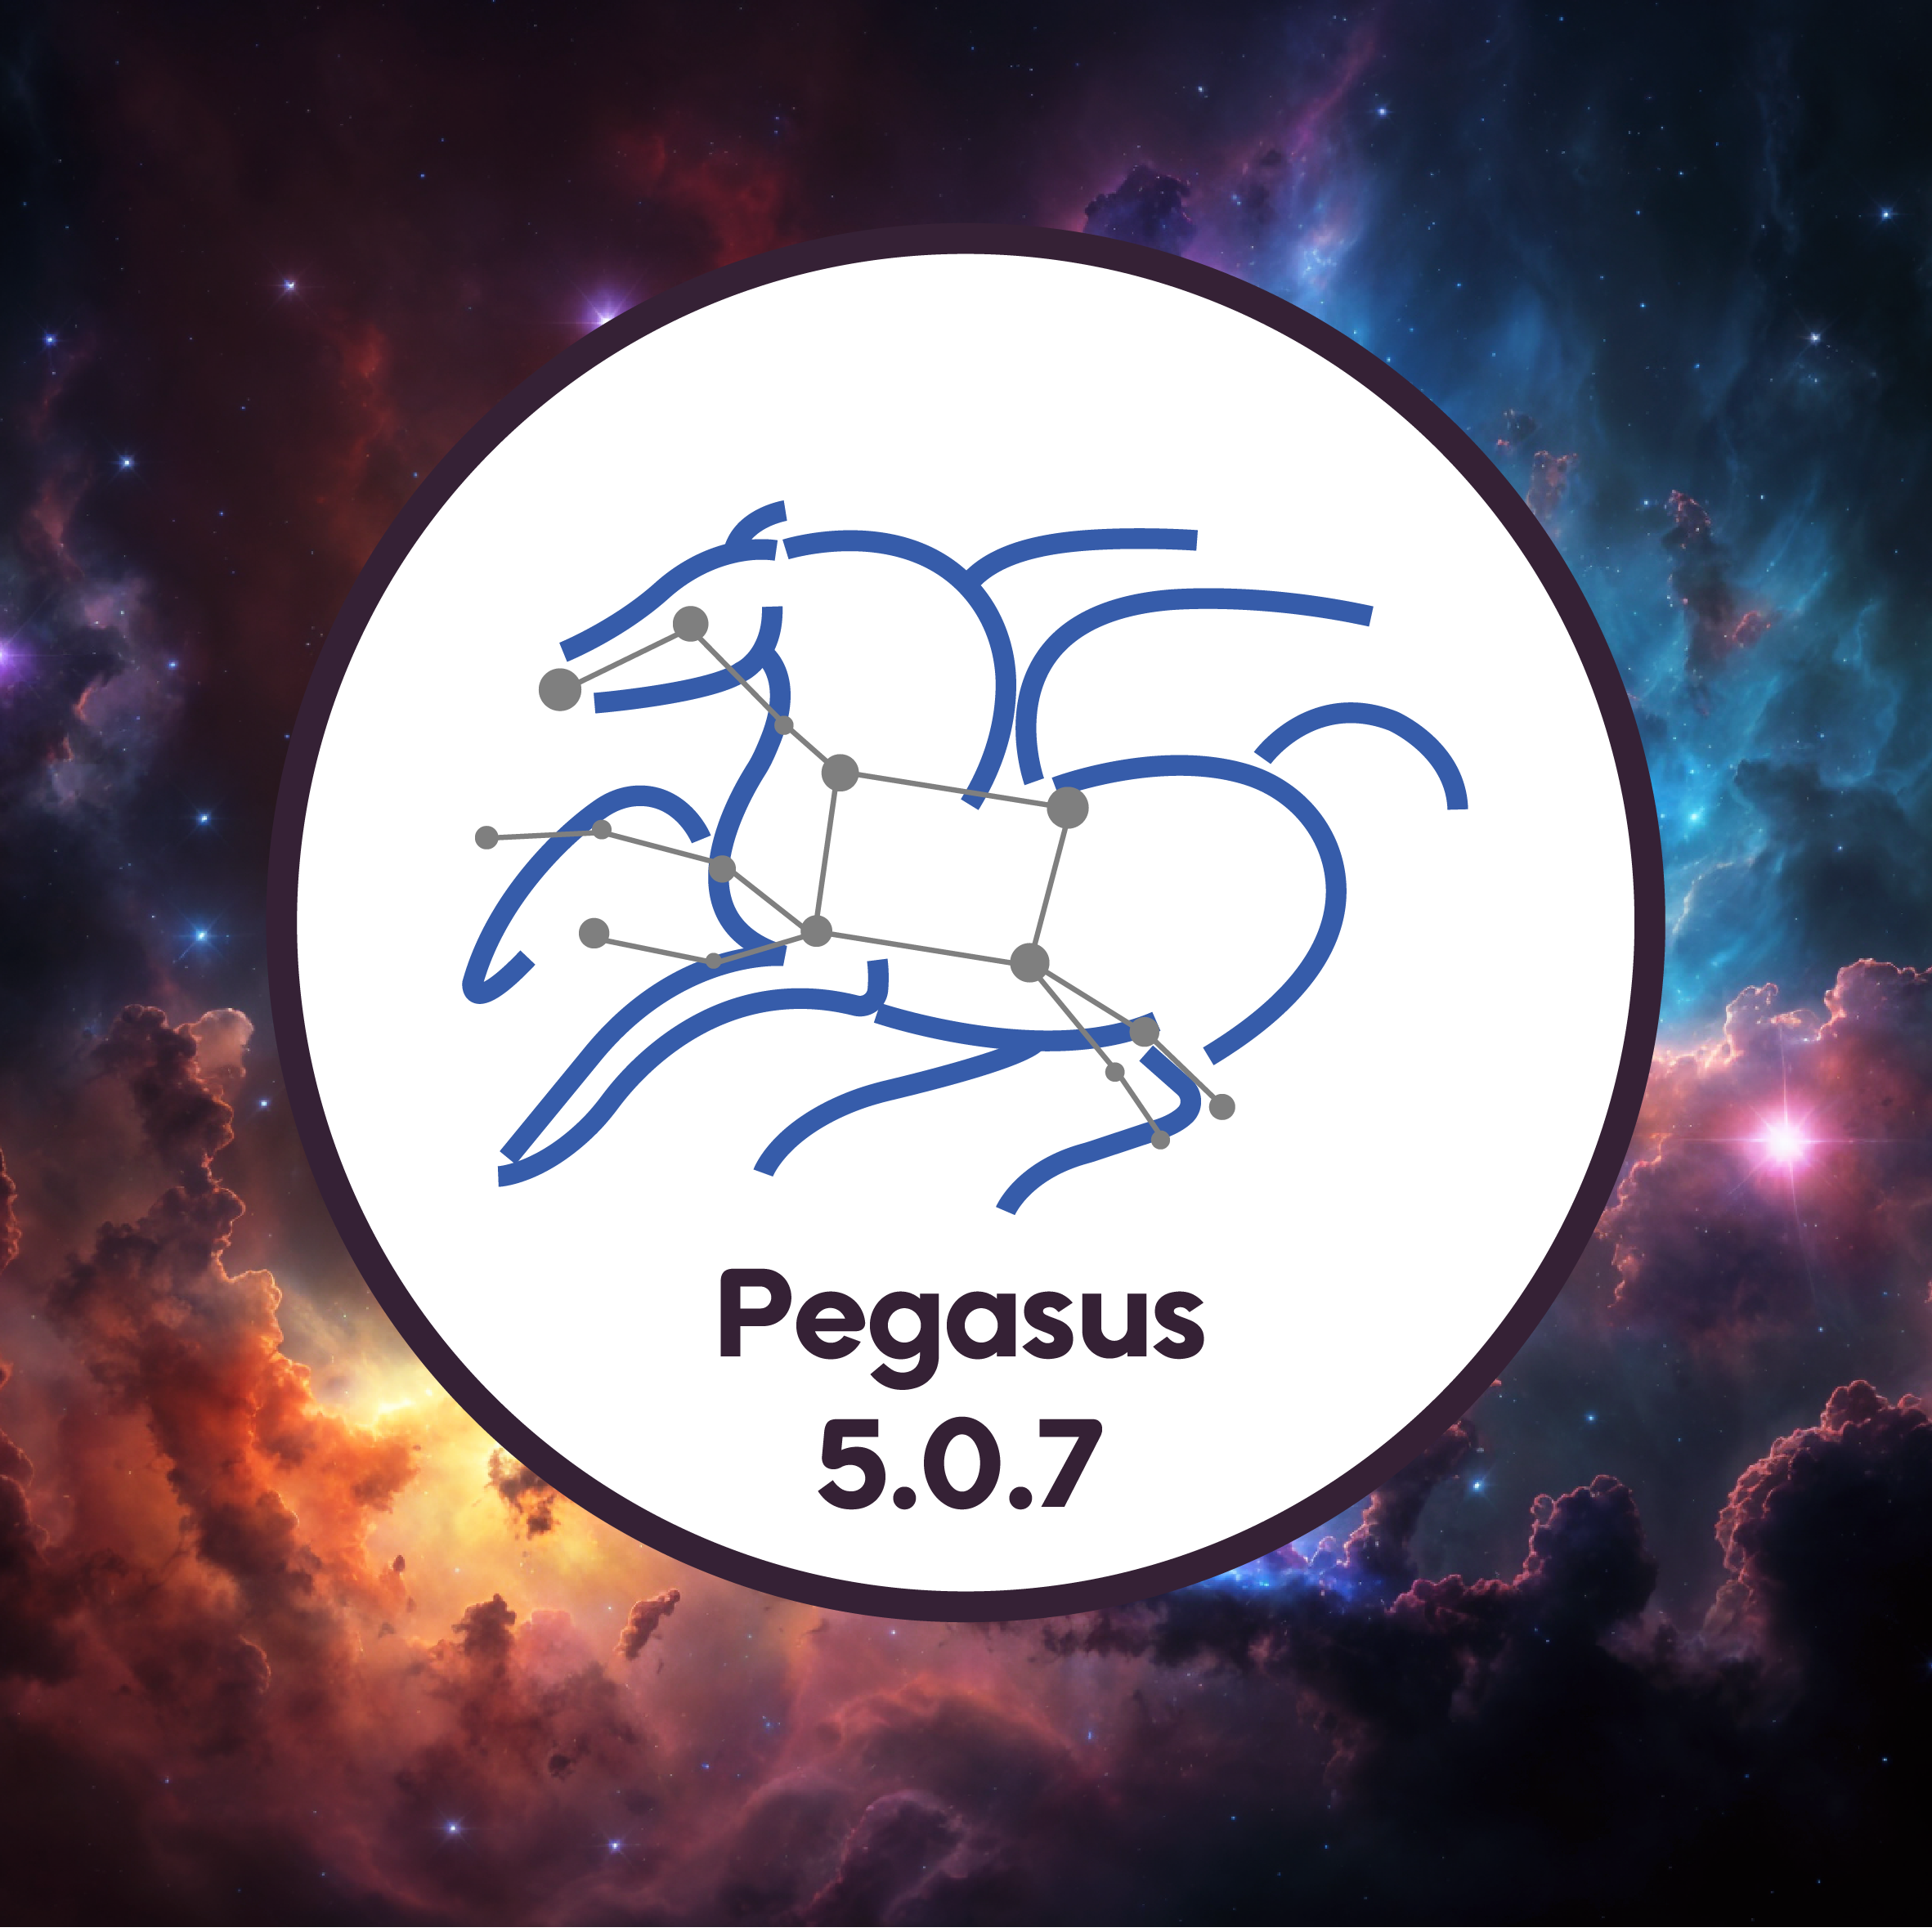 Pegasus 5.0.7 Released